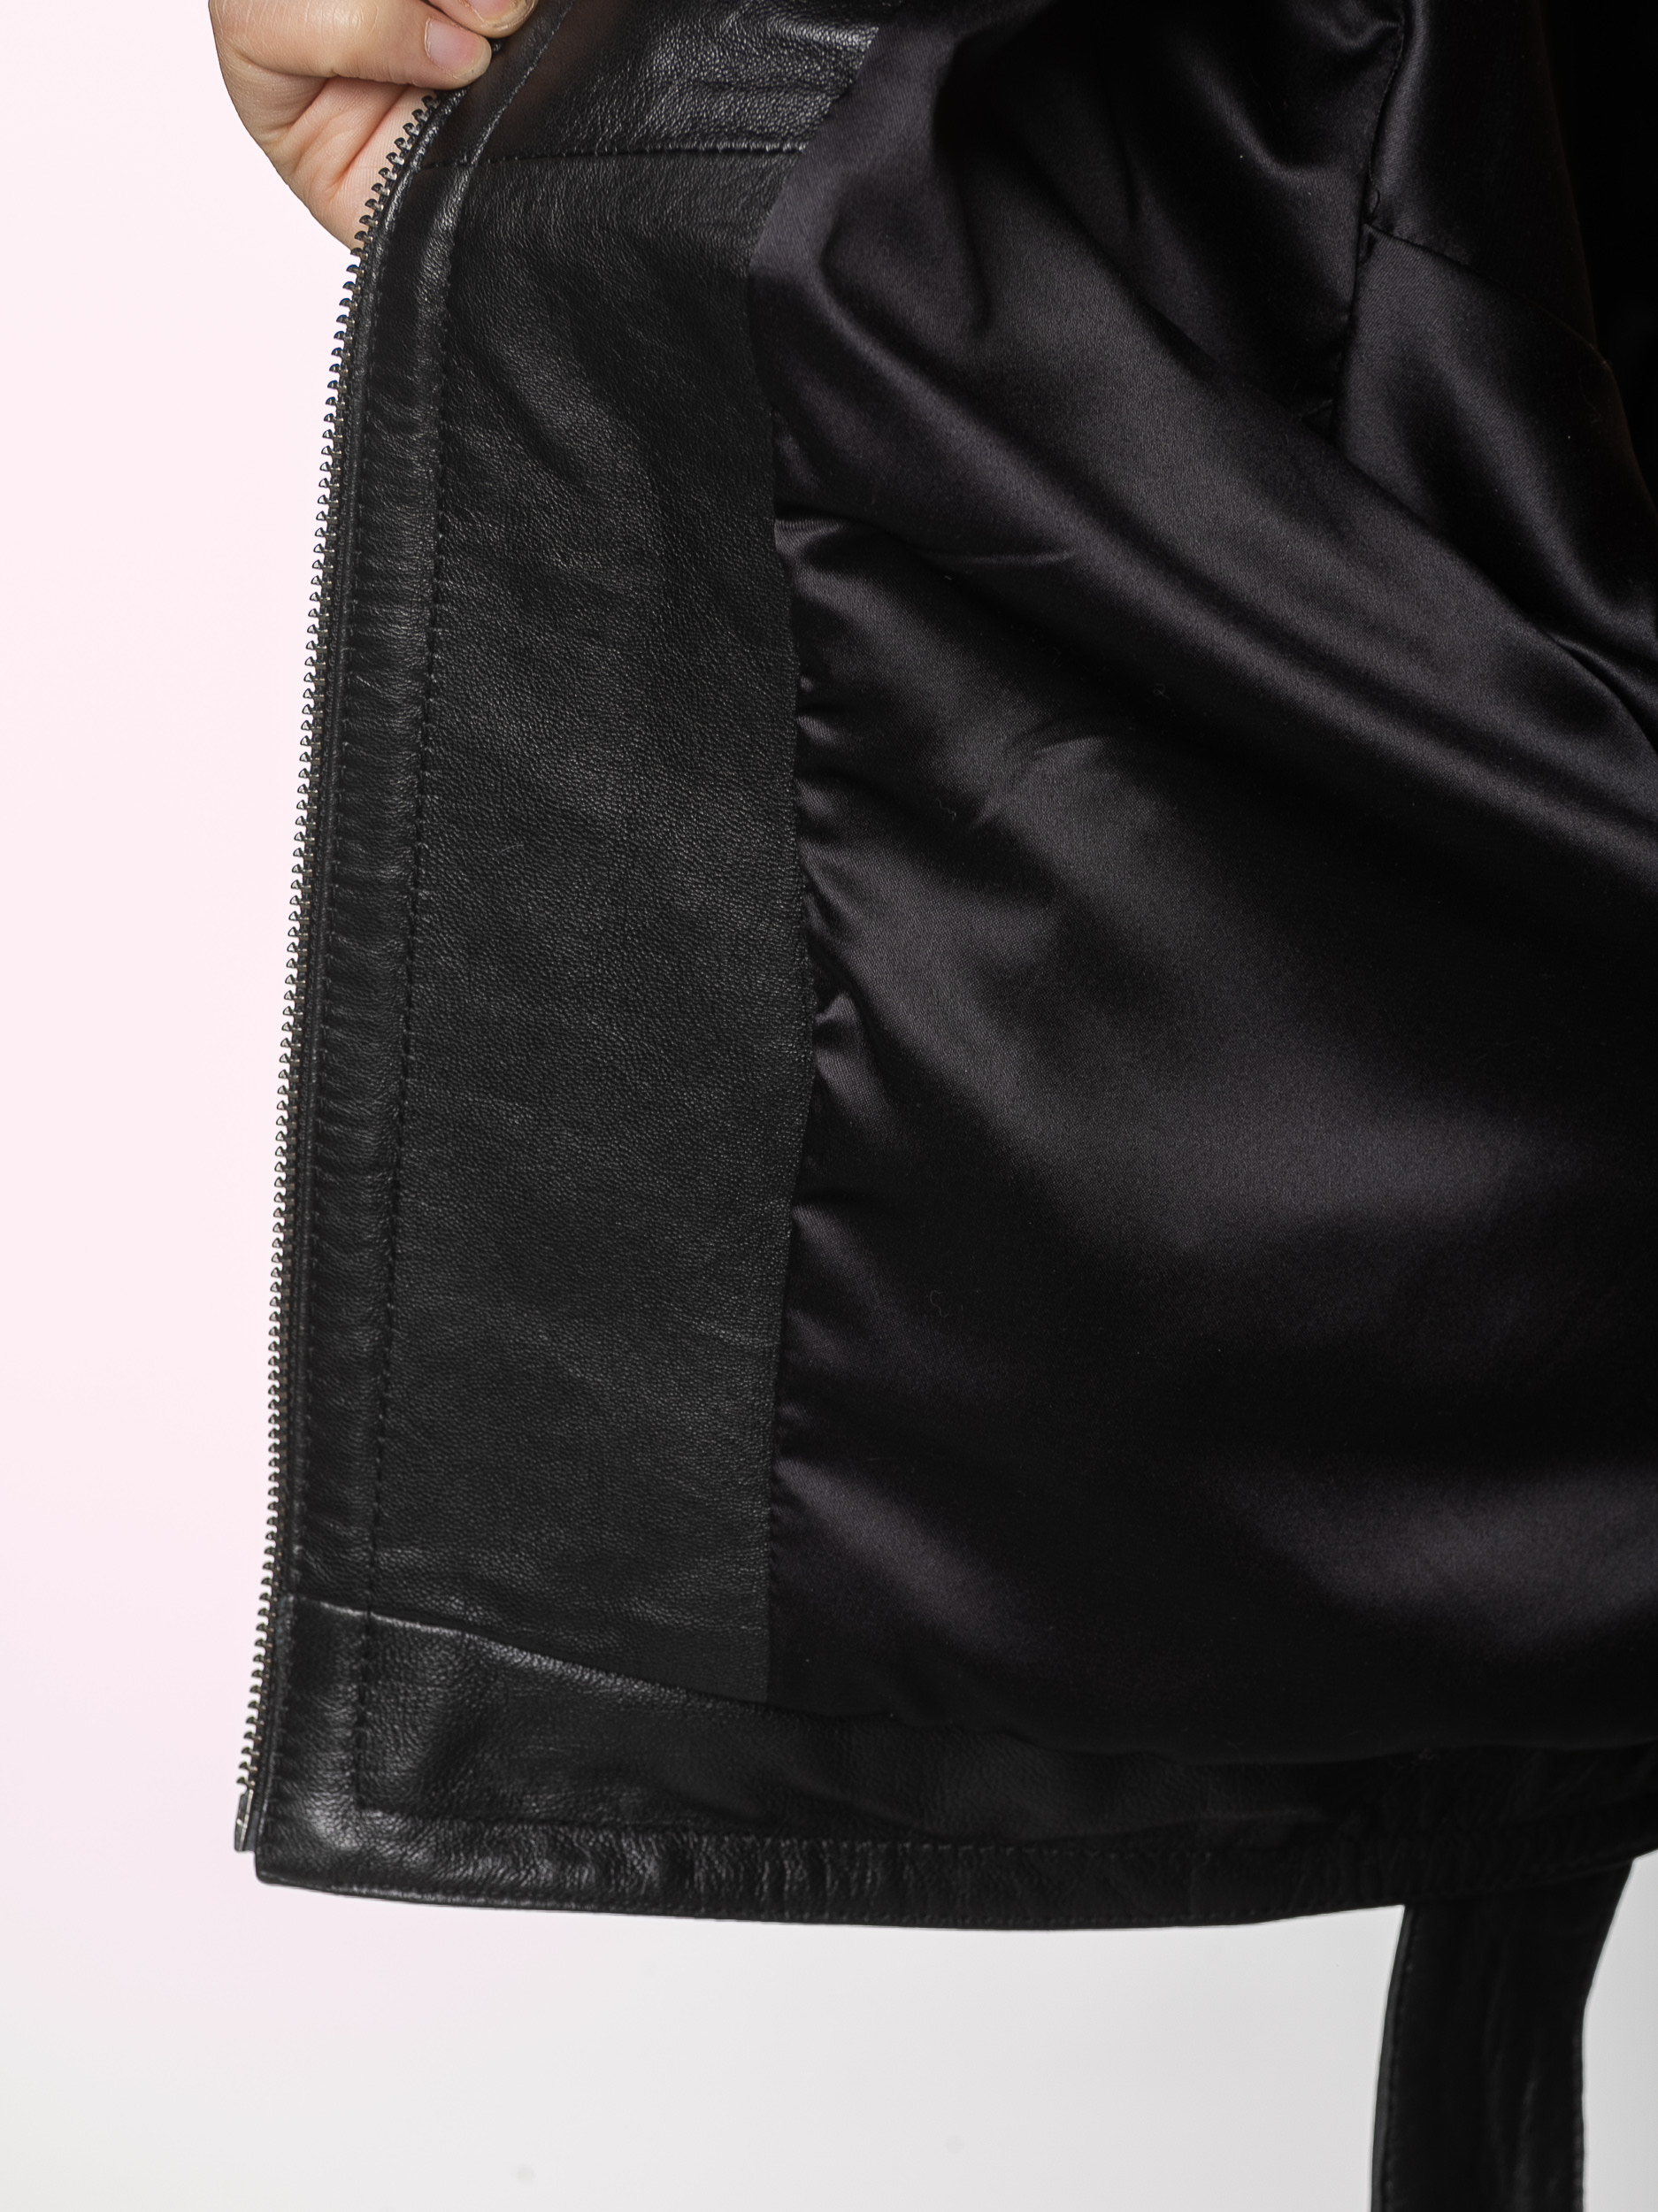 Куртка женская с капюшоном отделка из меха чернобурой лисы 53229